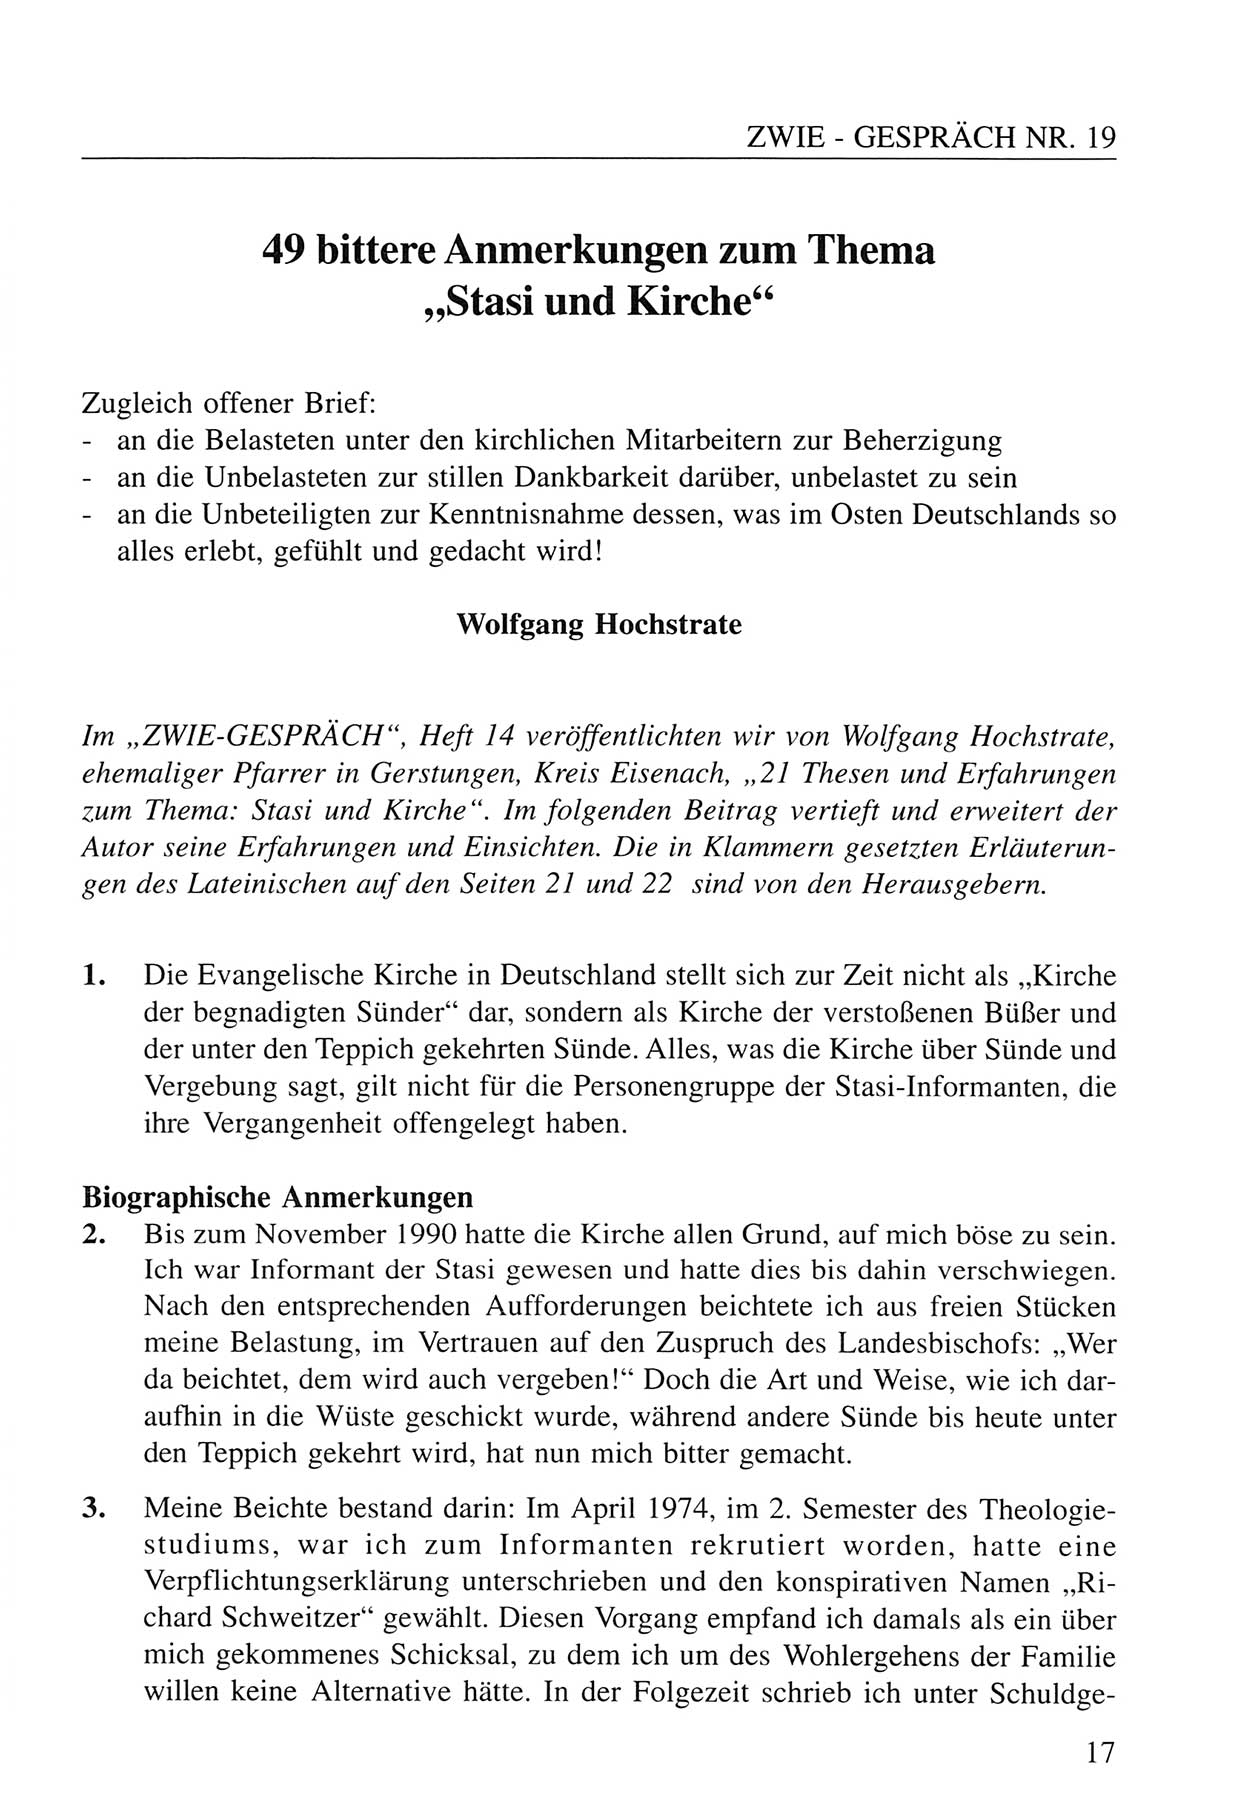 Zwie-Gespräch, Beiträge zum Umgang mit der Staatssicherheits-Vergangenheit [Deutsche Demokratische Republik (DDR)], Ausgabe Nr. 19, Berlin 1994, Seite 17 (Zwie-Gespr. Ausg. 19 1994, S. 17)